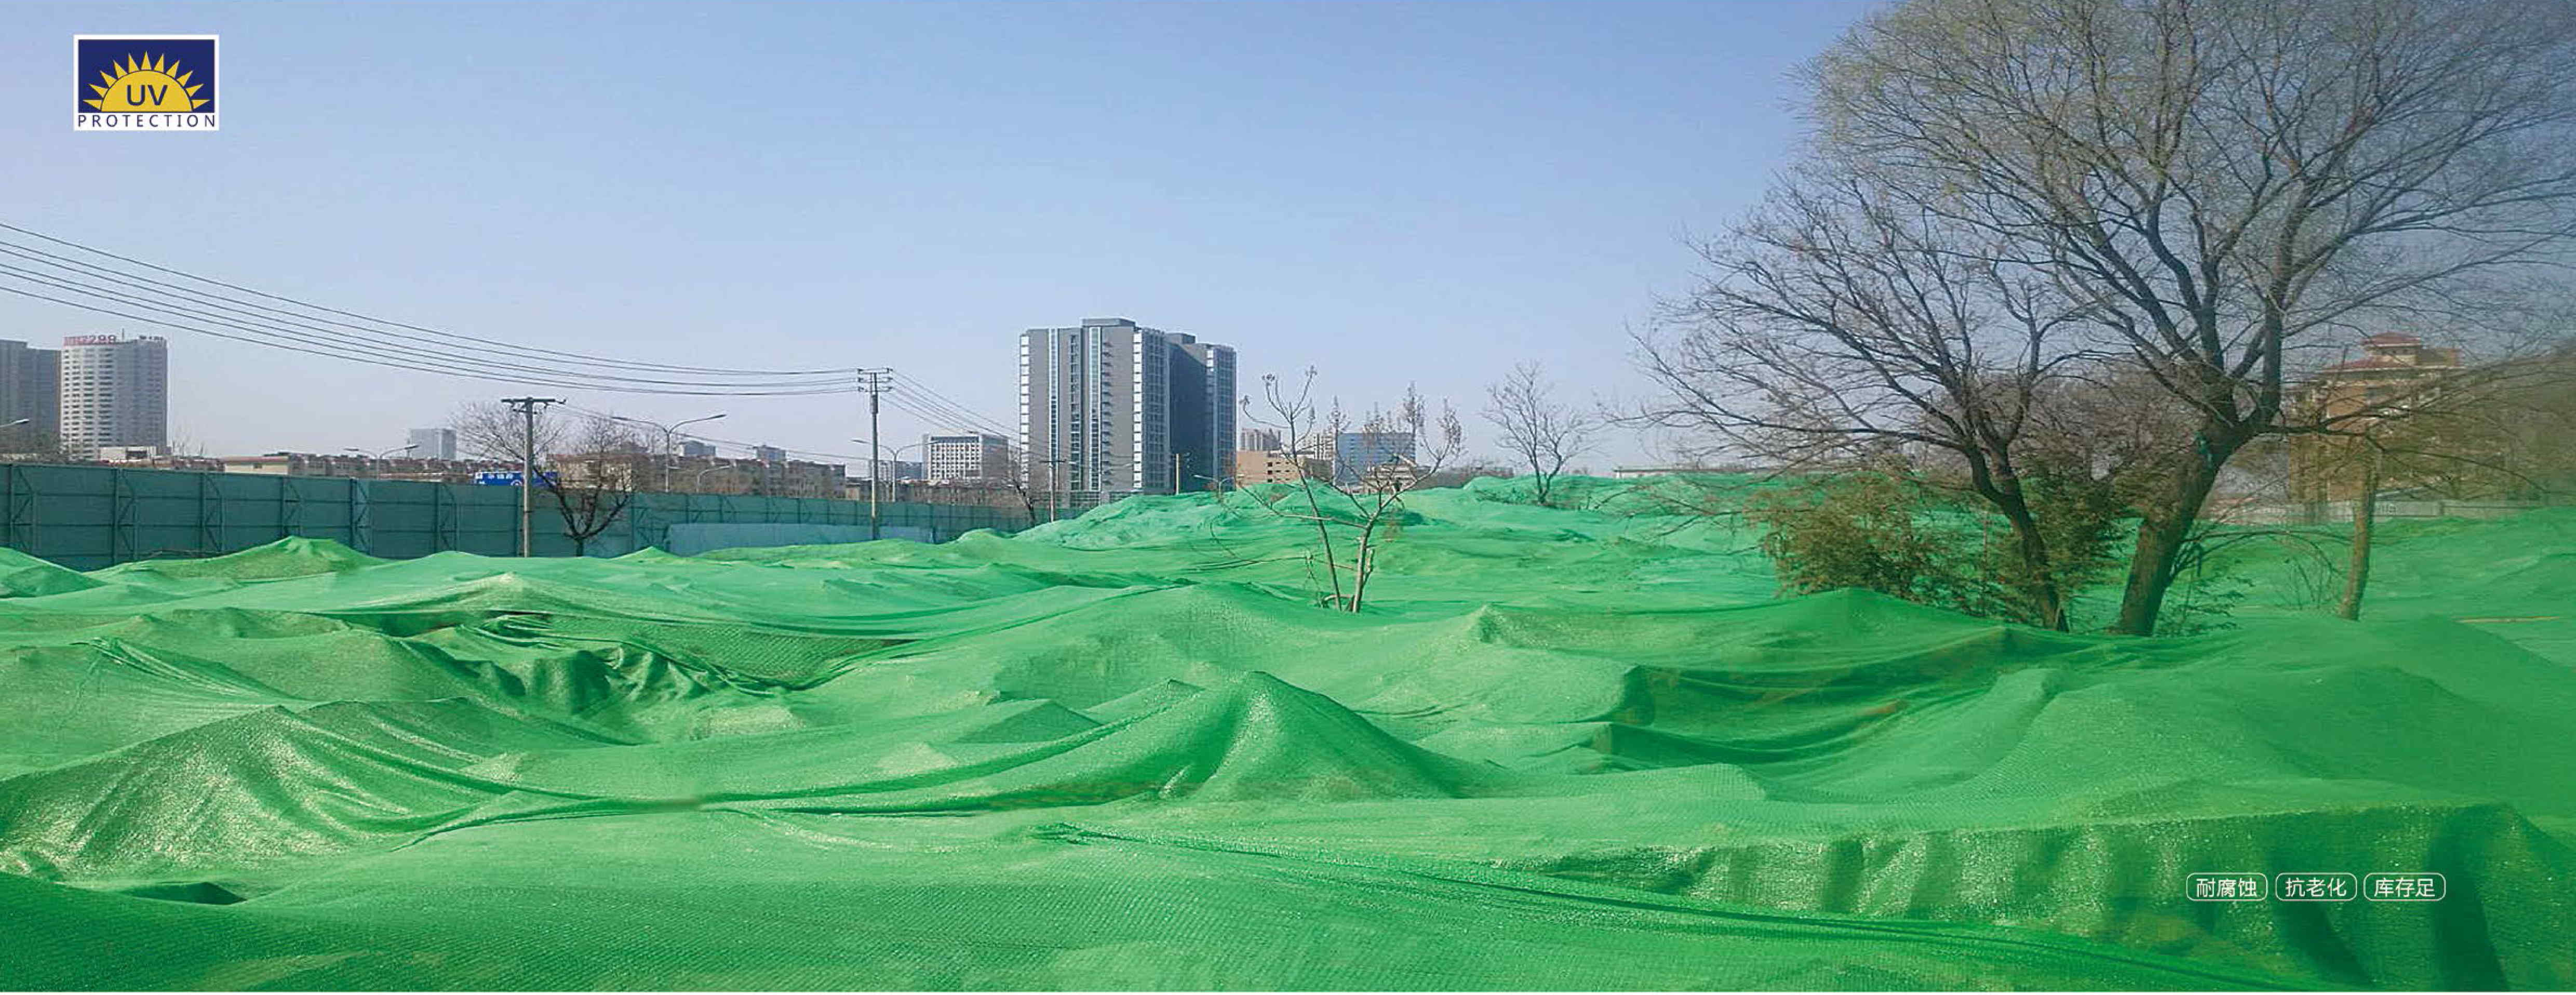 北京提供盖土网报价_6针盖土网相关-山东金冠网具有限公司